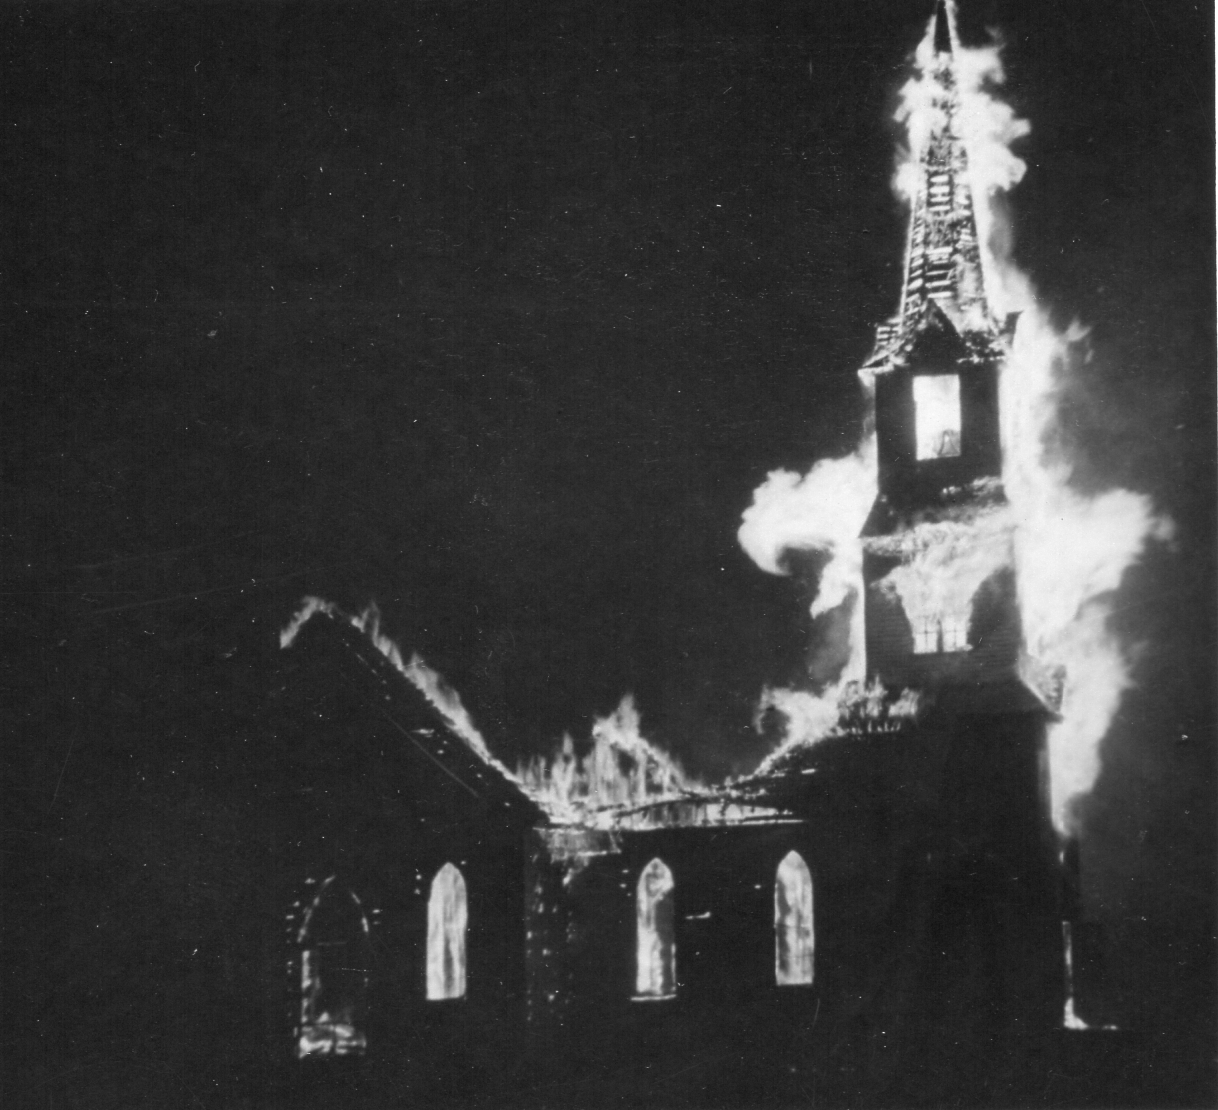 1st-West-Denmark-church-burning-Sept.-9-1937.jpg